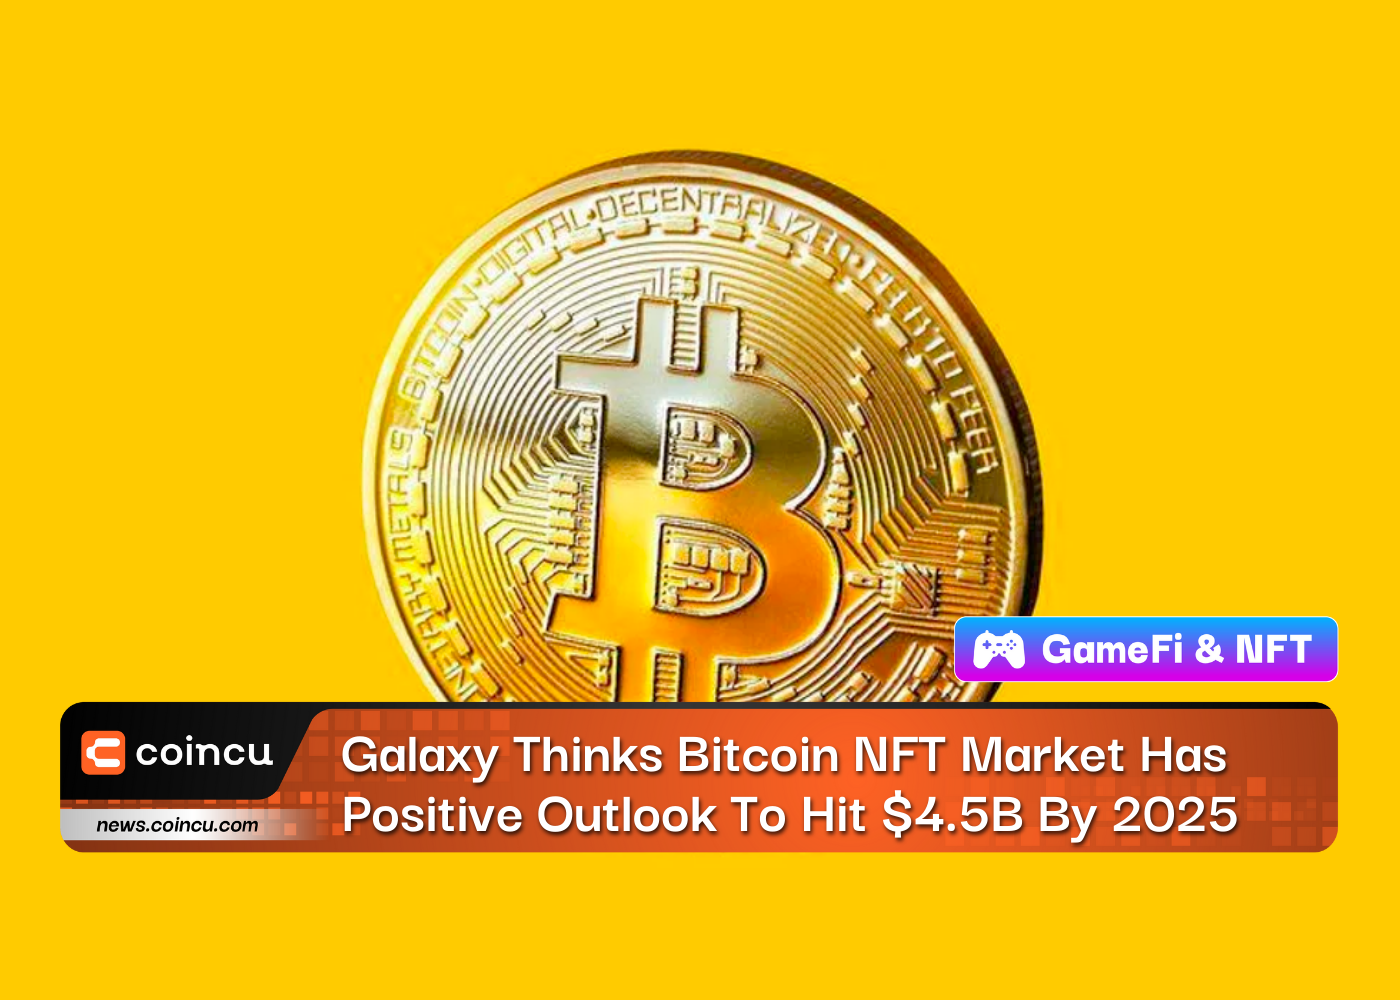 Galaxy cho rằng thị trường NFT Bitcoin có triển vọng tích cực để đạt 4.5 tỷ USD vào năm 2025